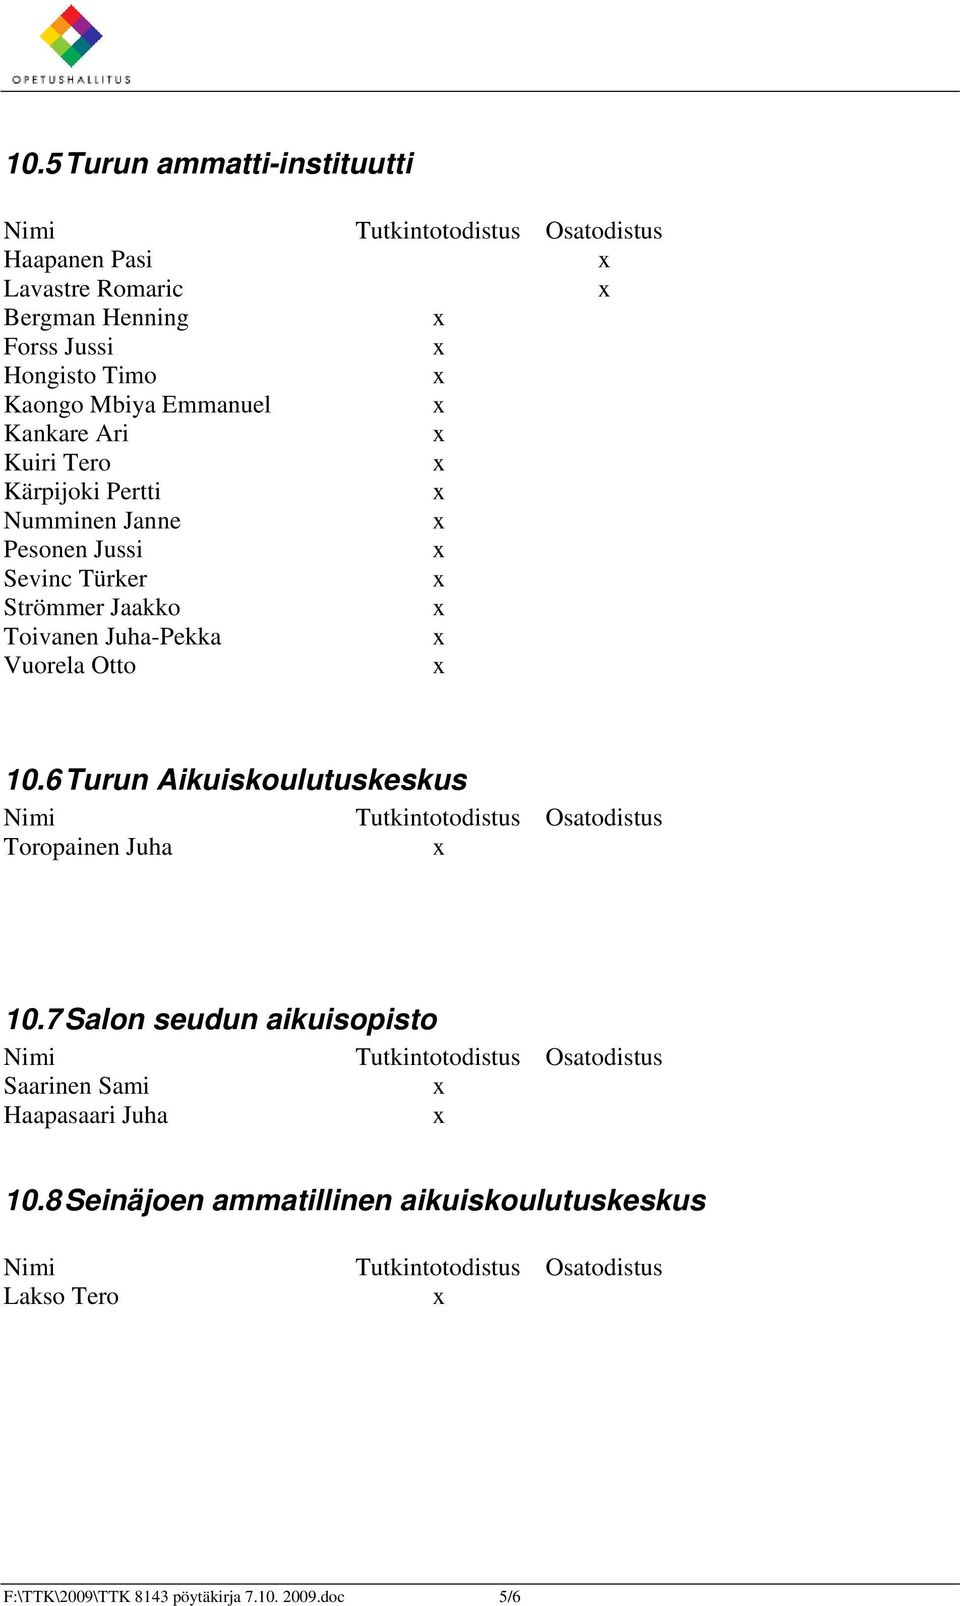 Juha-Pekka Vuorela Otto 10.6 Turun Aikuiskoulutuskeskus Toropainen Juha 10.